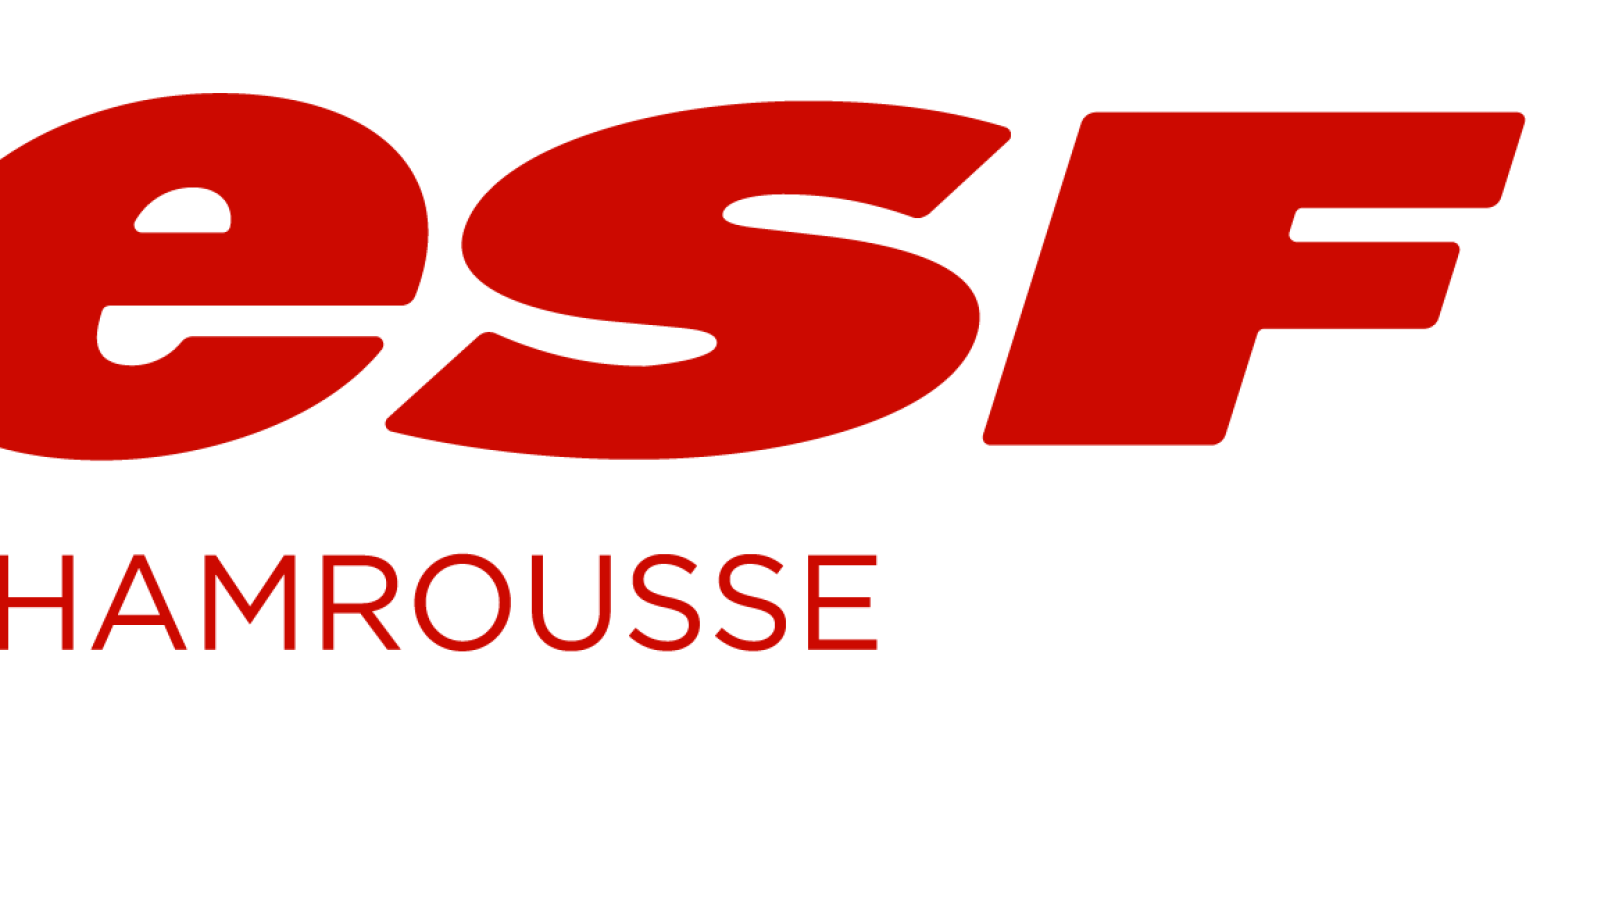 Chamrousse French Ski School logo